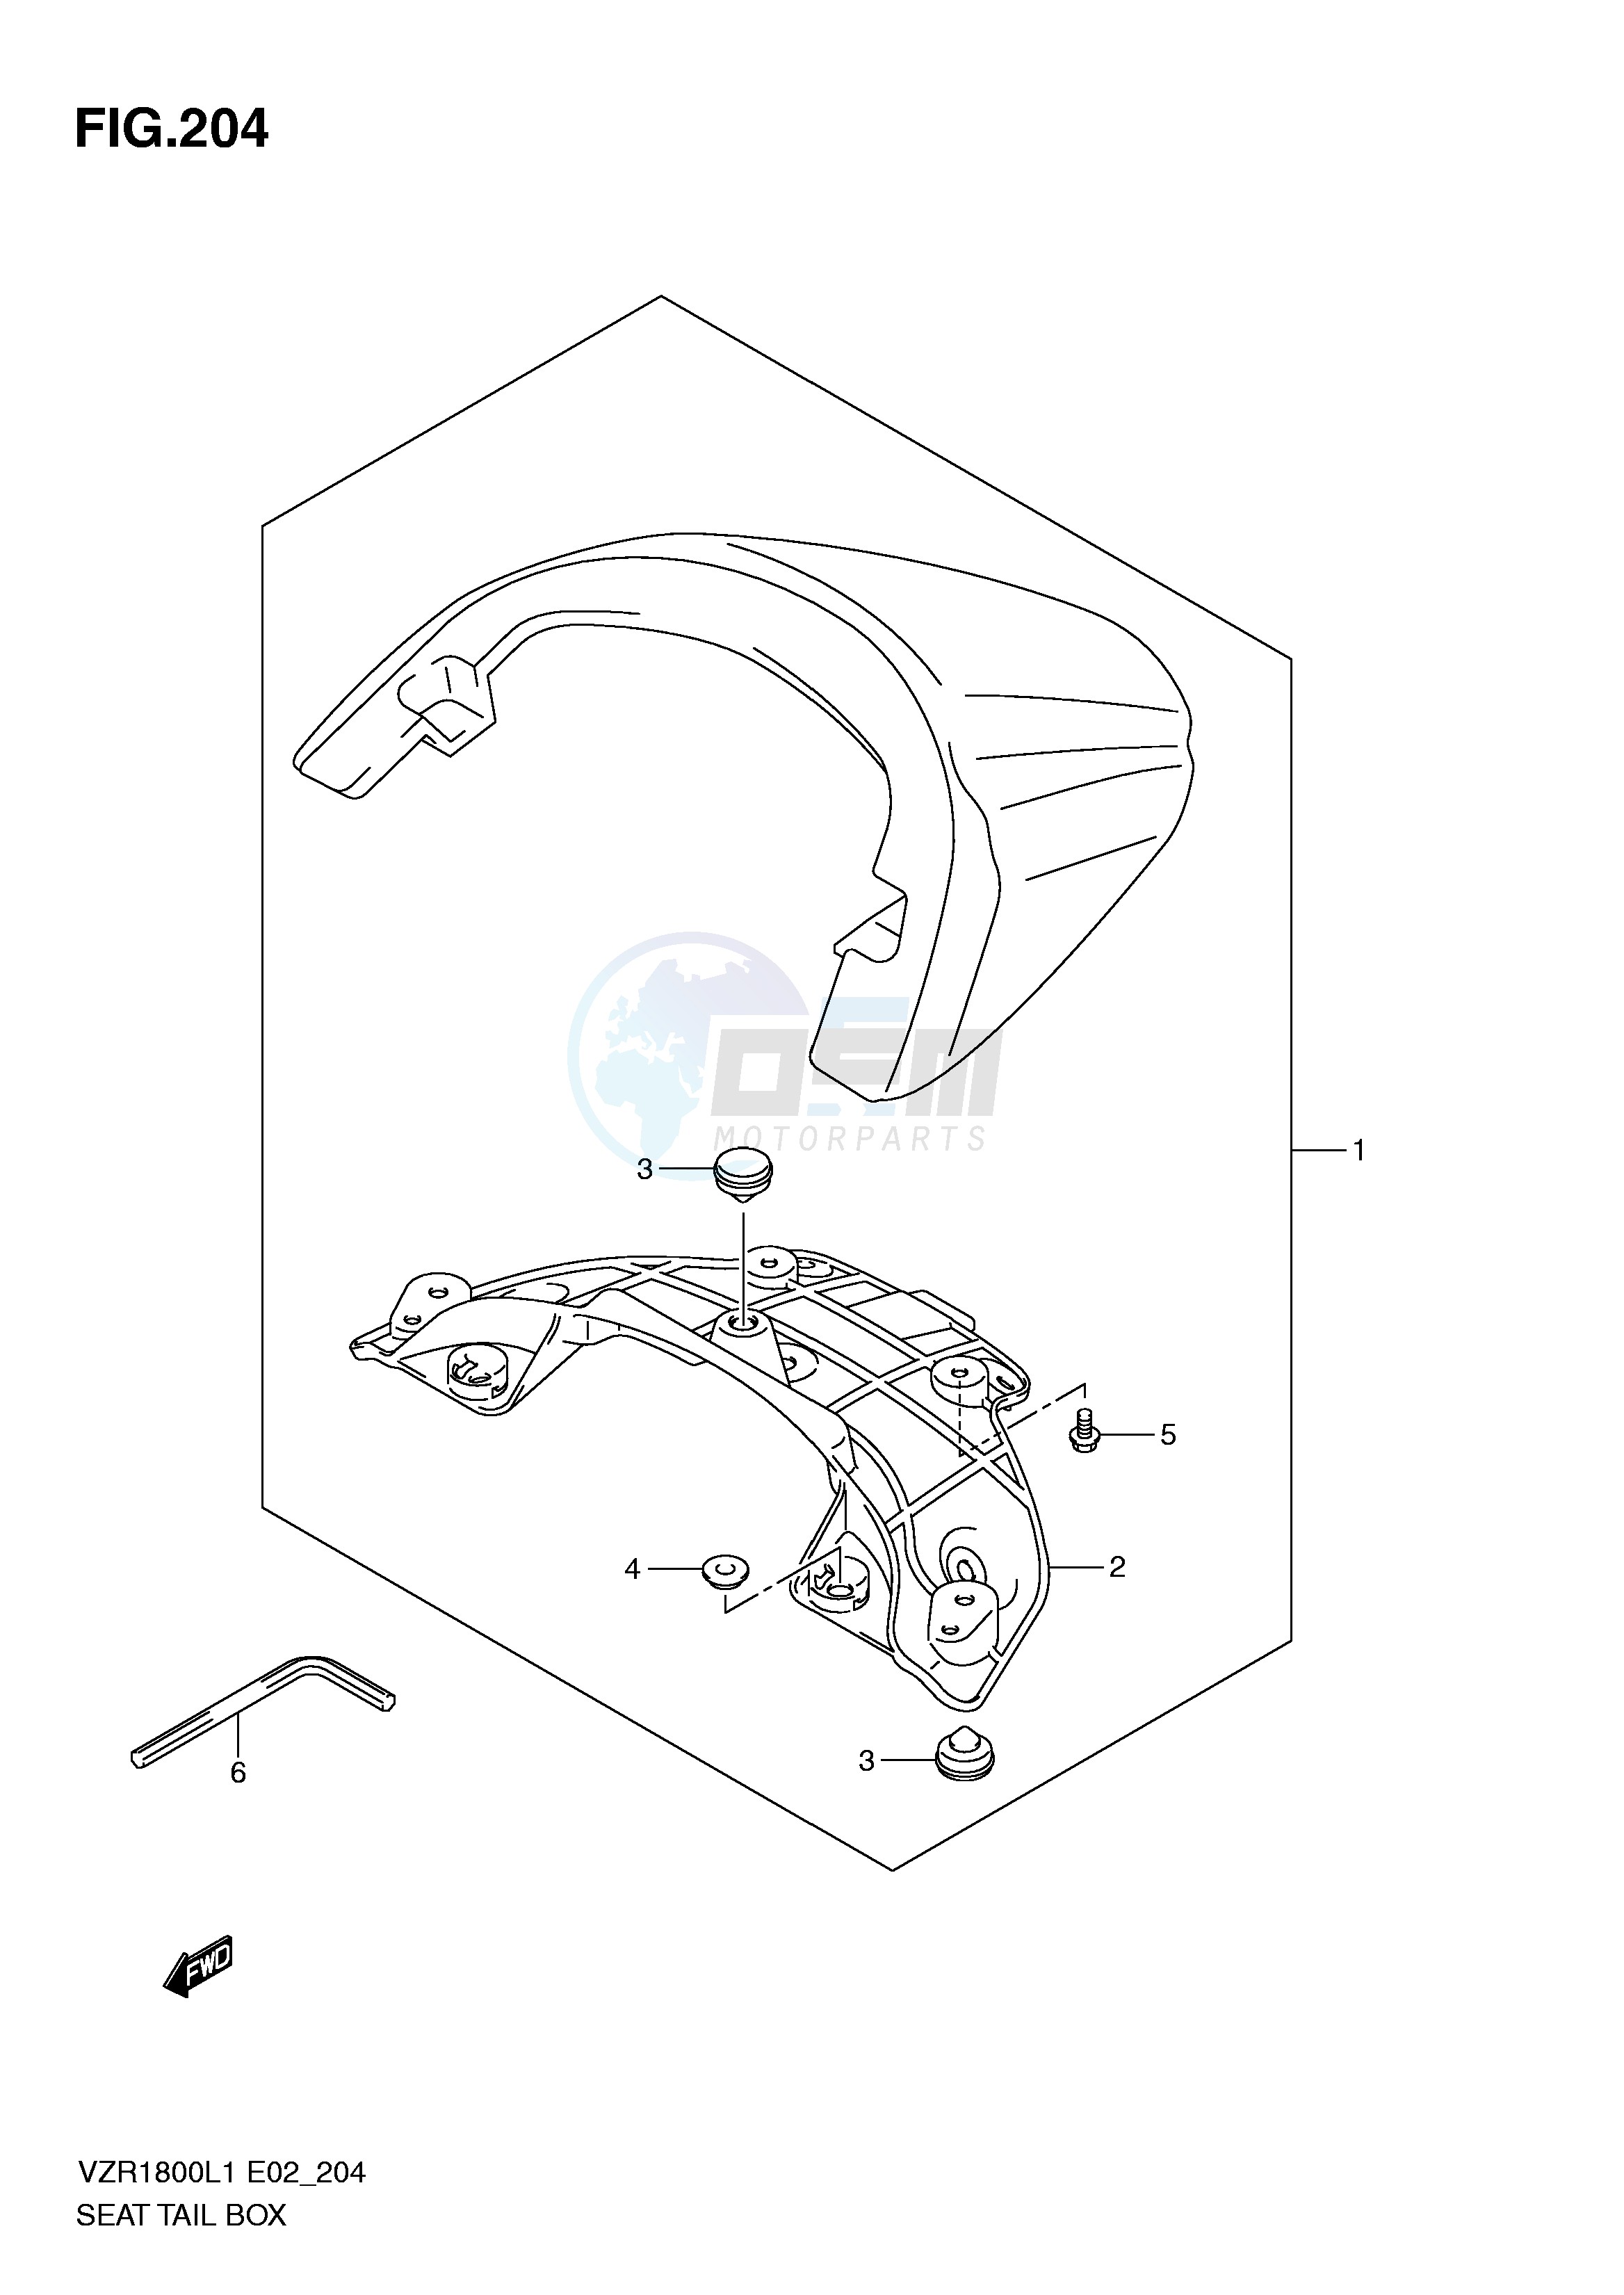 SEAT TAIL BOX (VZR1800L1 E51) blueprint